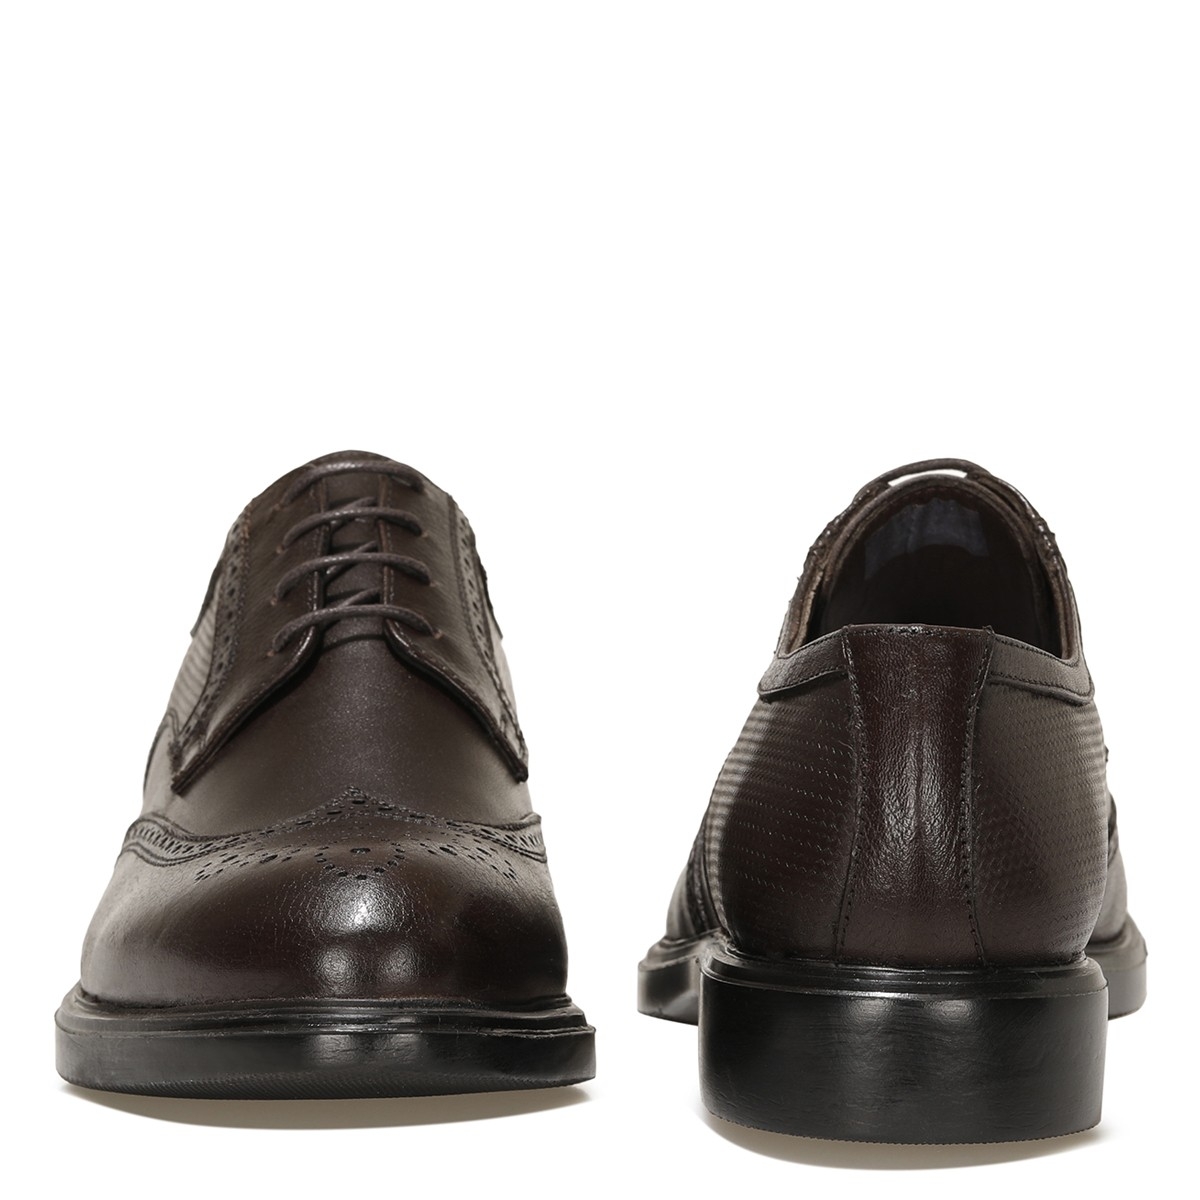 Flo BARLETTA  1FX Kahverengi Erkek Klasik Ayakkabı. 5